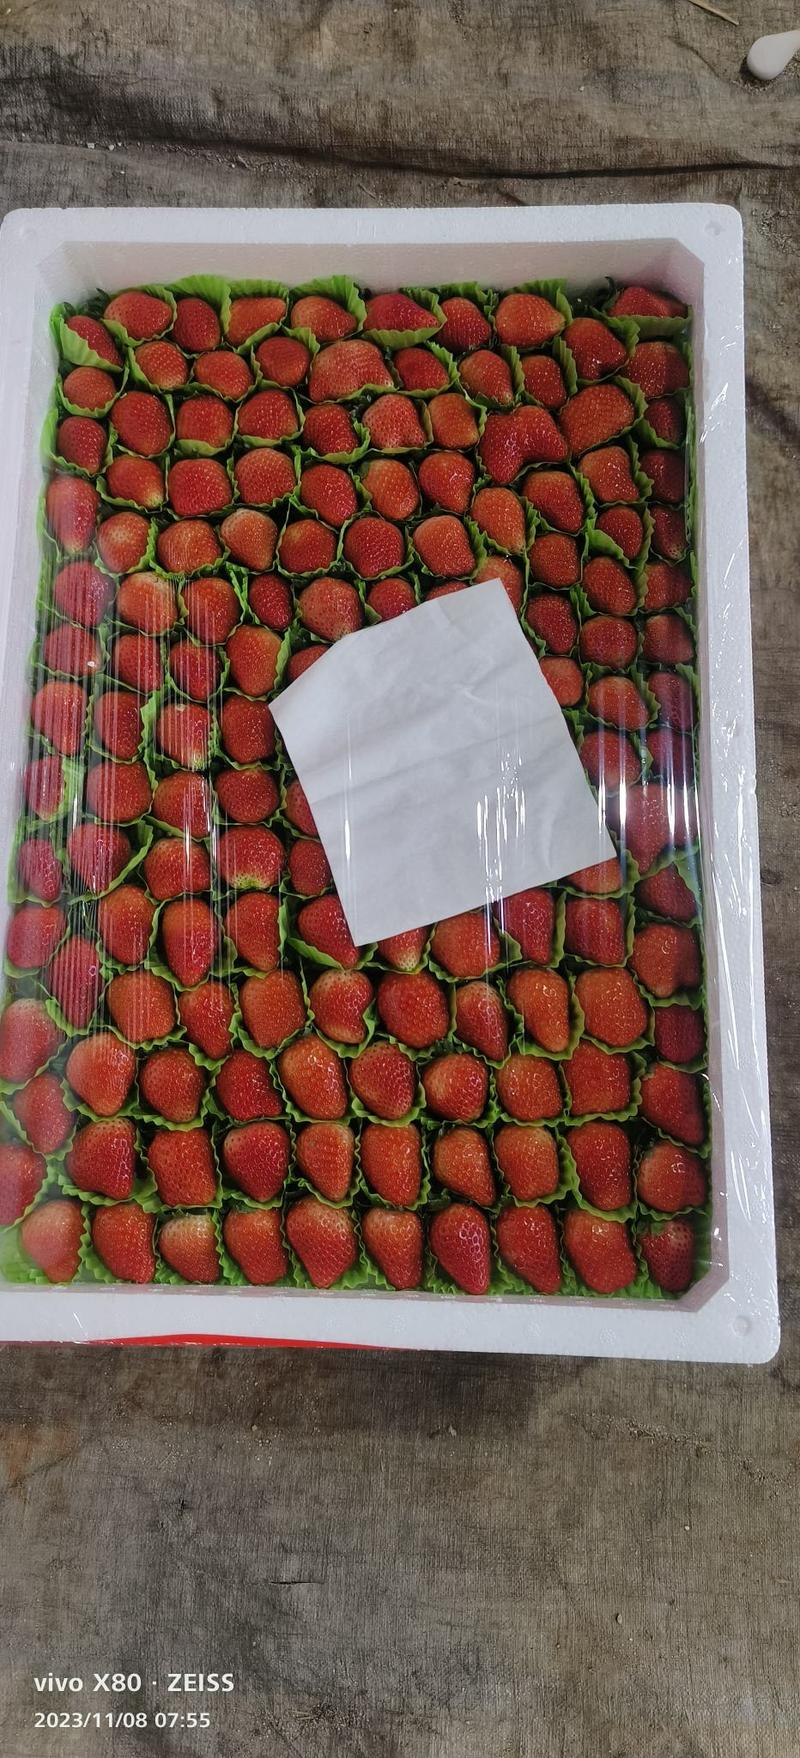 江苏省徐州市邳州市万亩草莓基地妙香奶牛草莓